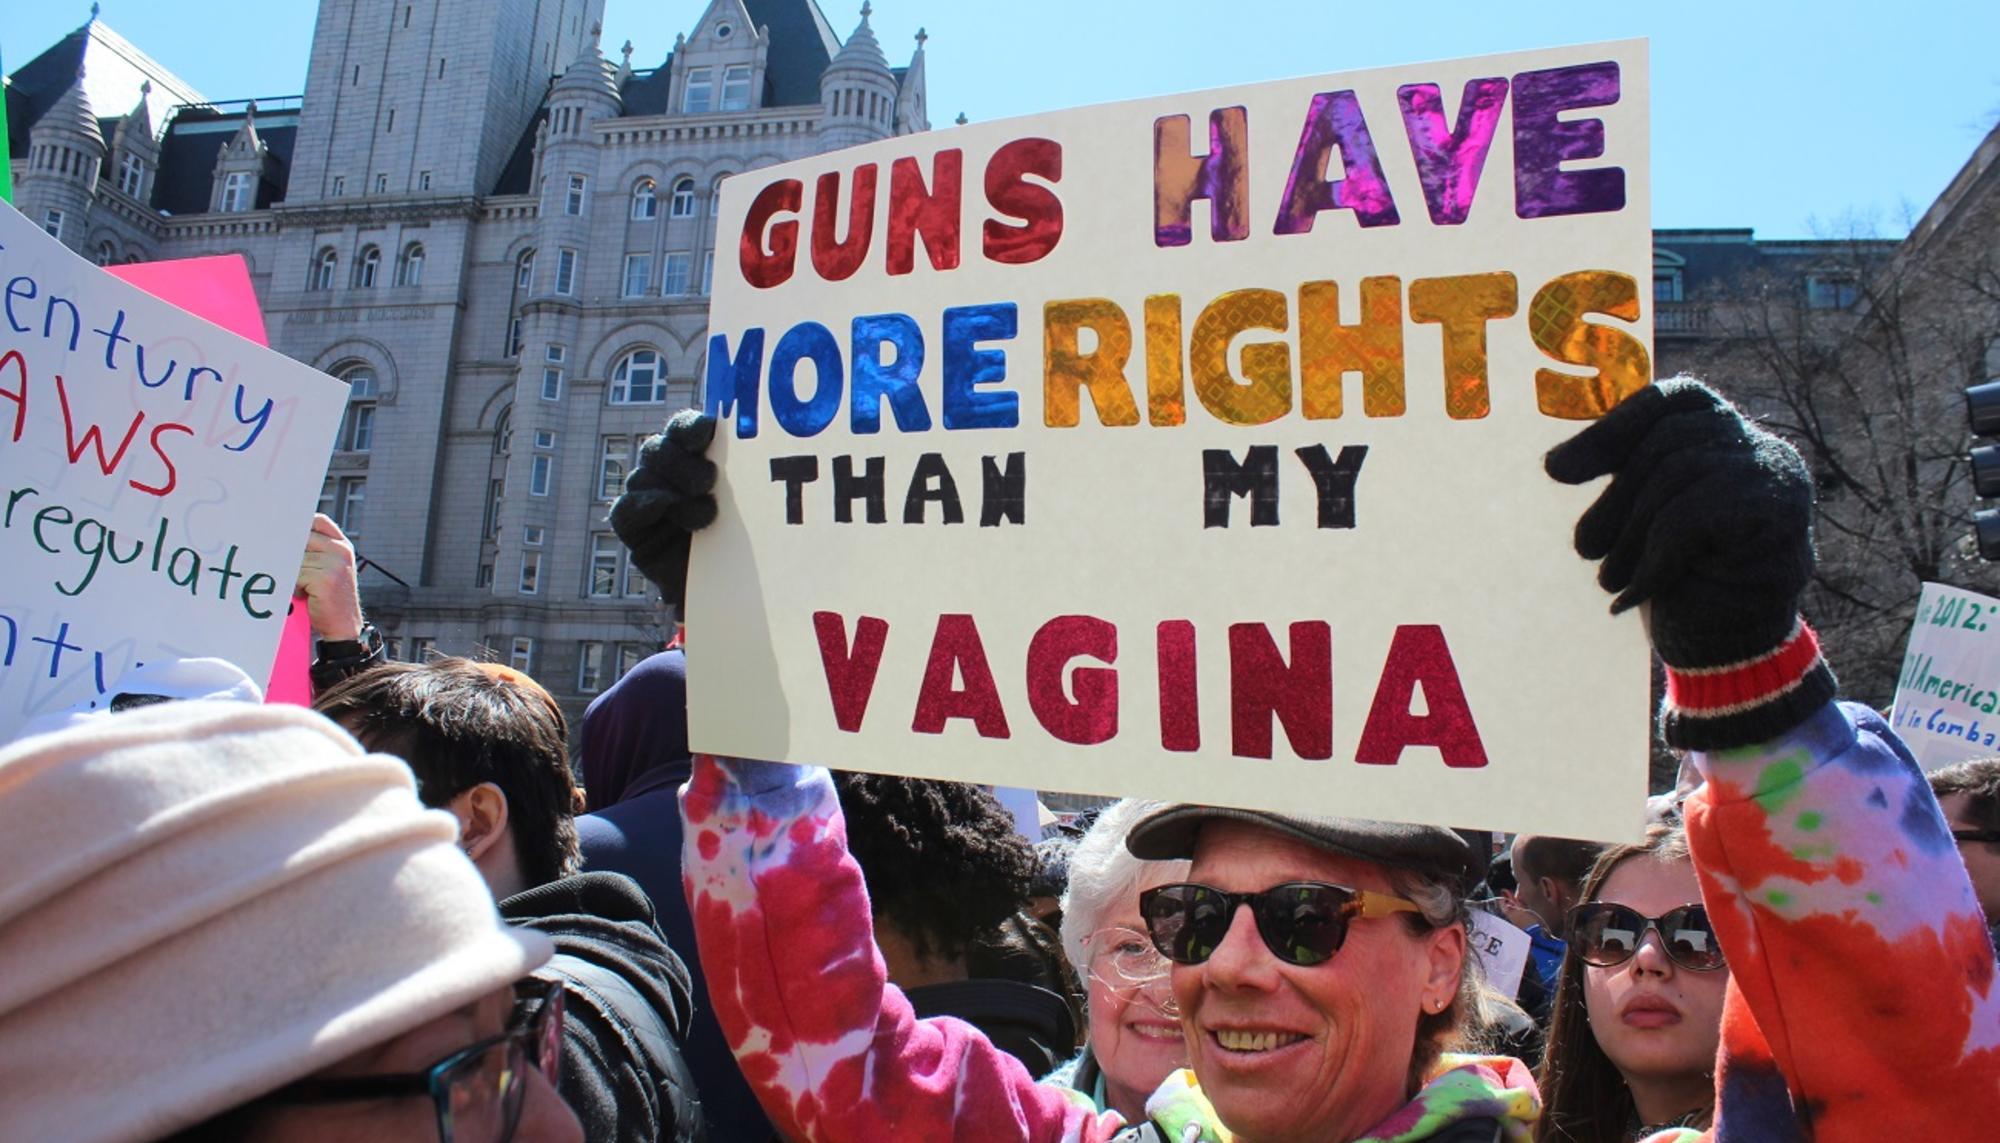 “Las armas tienen más derechos que mi vagina”, dice una manifestante en la Marcha por nuestras vidas en Washington DC